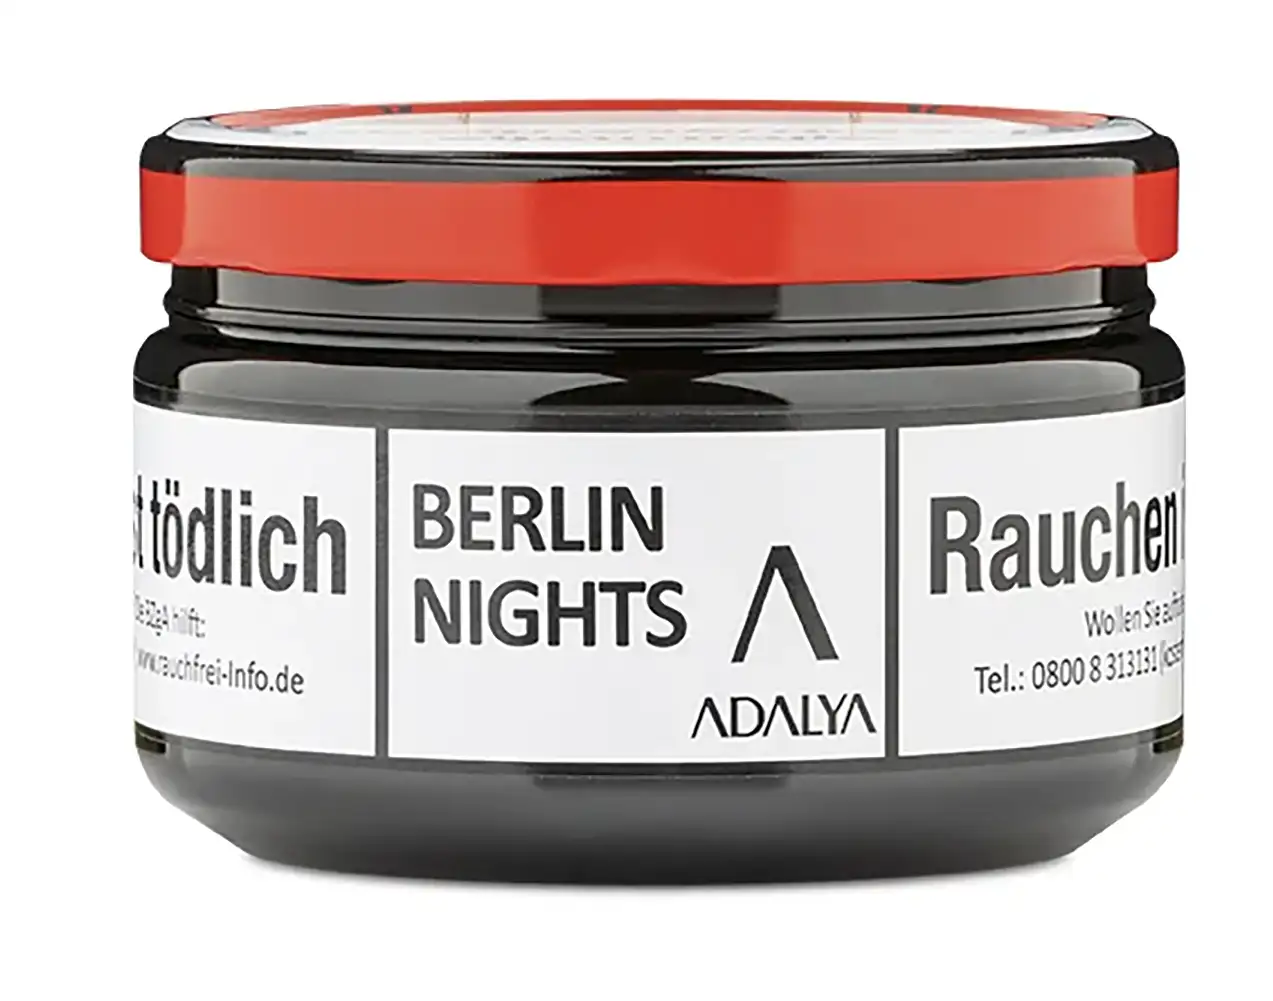 Adalya Pfeifentabak Berlin Nights 100g